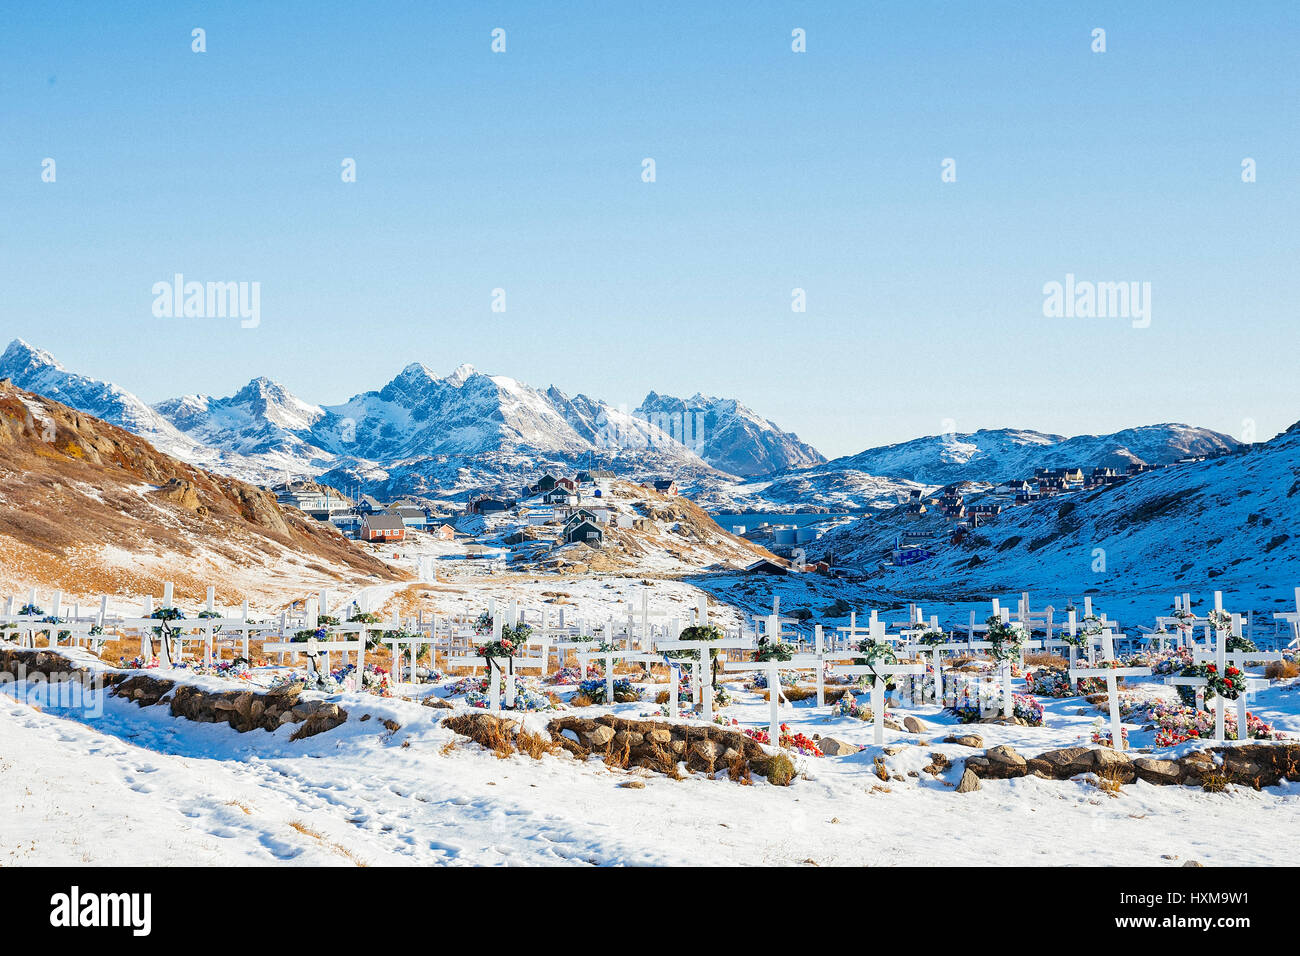 Cimetière et derrière il y a la ville appelée Tasiilaq, qui est dans le sud-est du Groenland. Le Groenland est une autonomouscountry au sein du Royaume du Danemark Banque D'Images